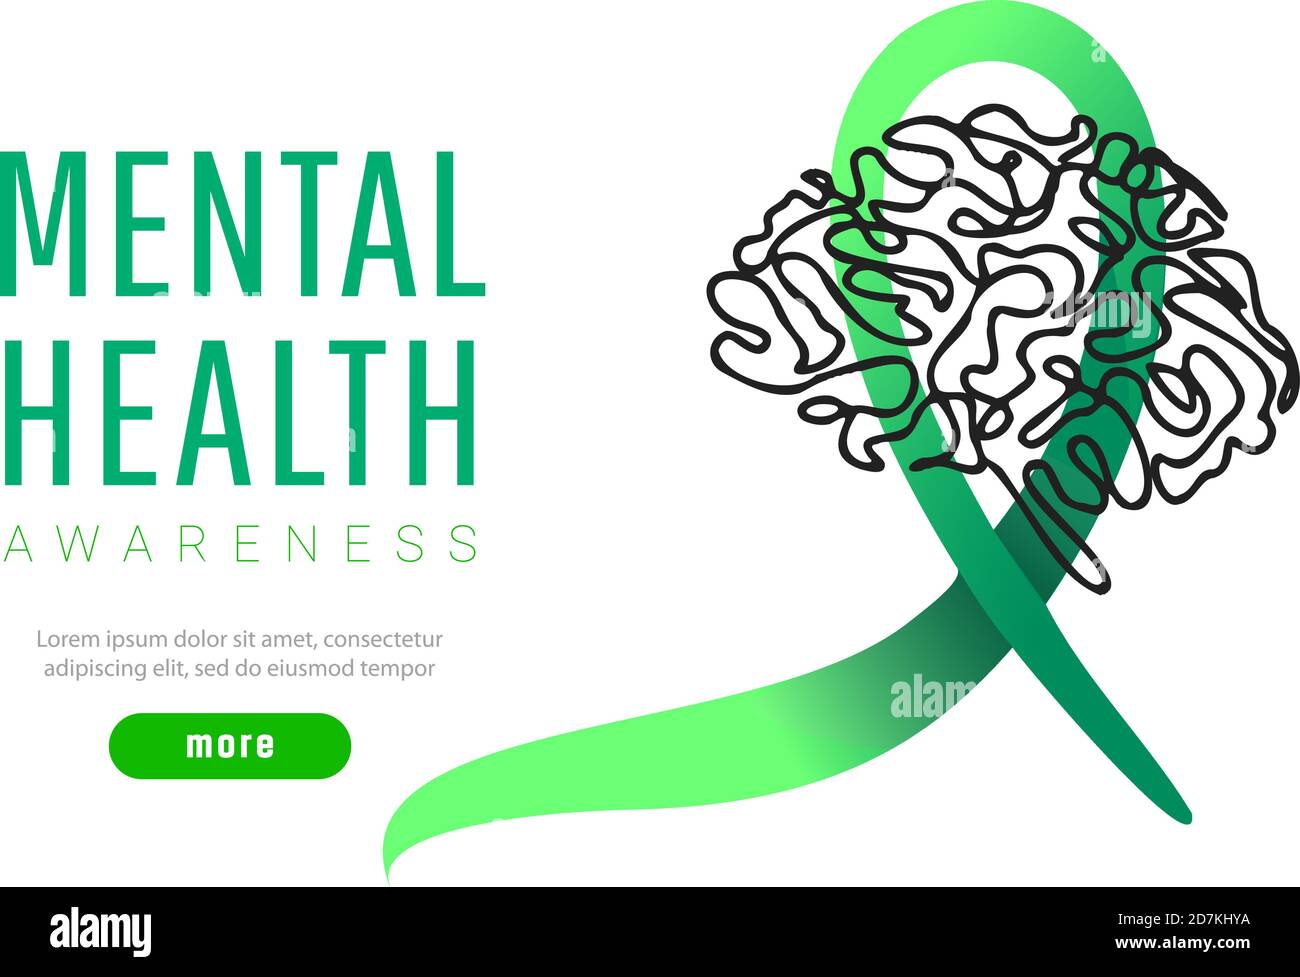 Welttag der psychischen Gesundheit Konzept. Grünes Bewusstsein Band mit Linie Gehirn Symbol oder Form auf weißem Hintergrund Stock Vektor